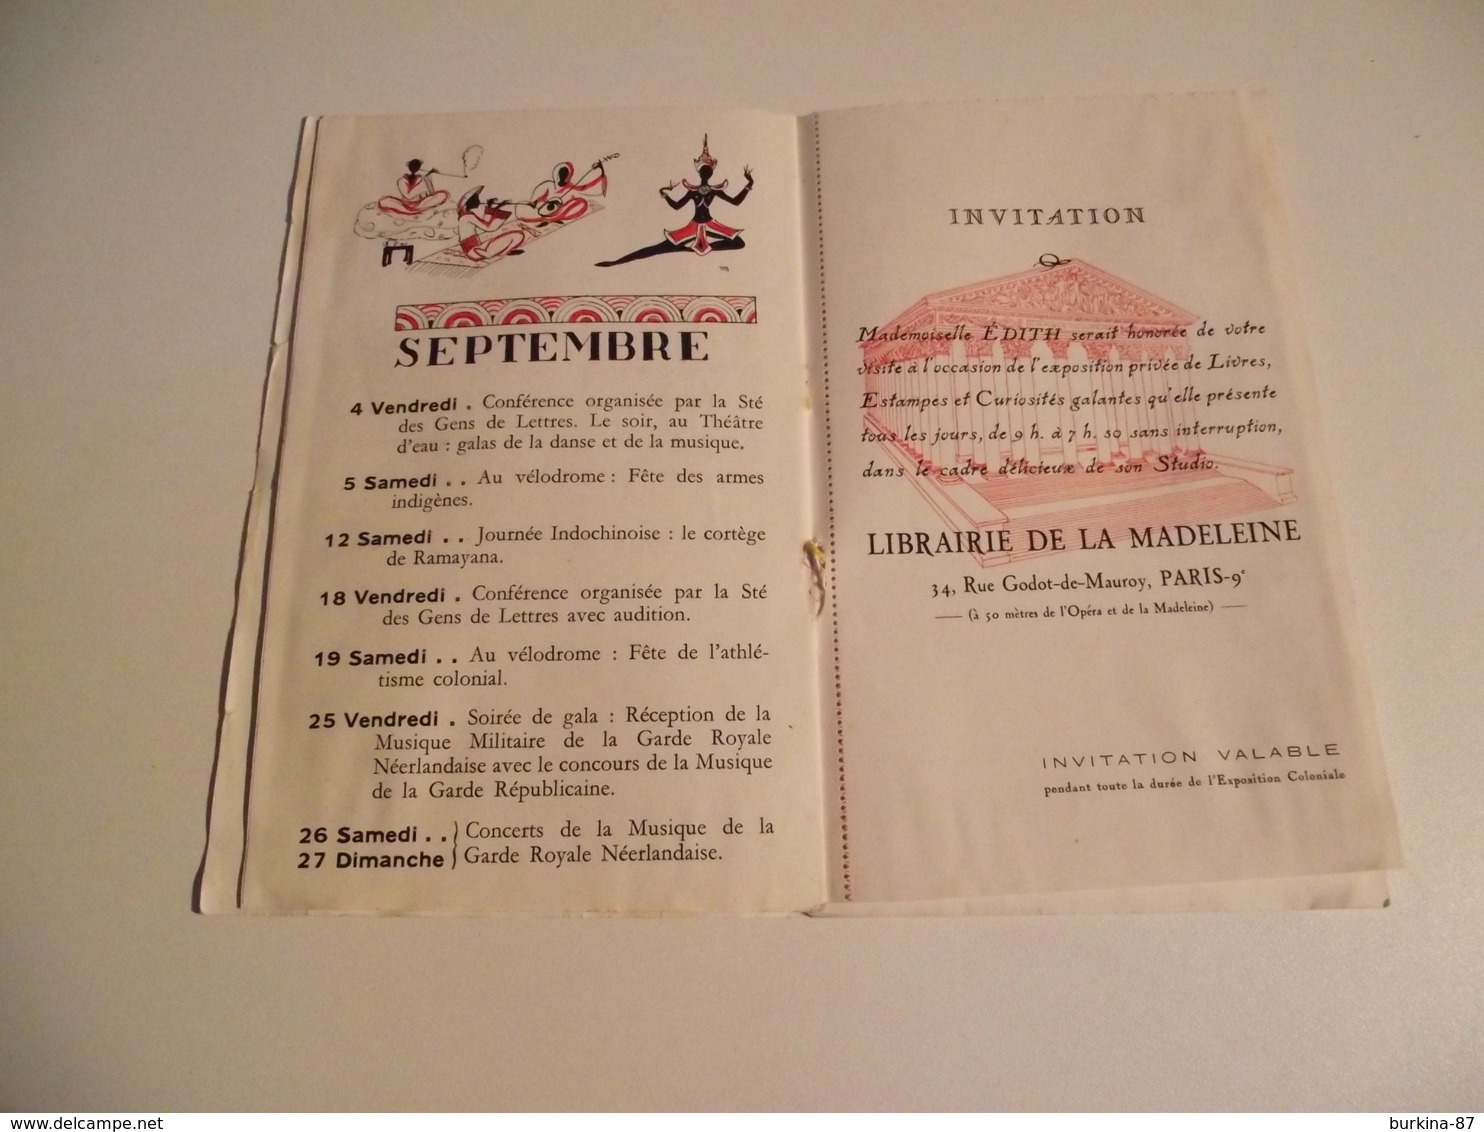 EXPOSITION COLONIALE , 1931, Calendrier des Fetes, programme